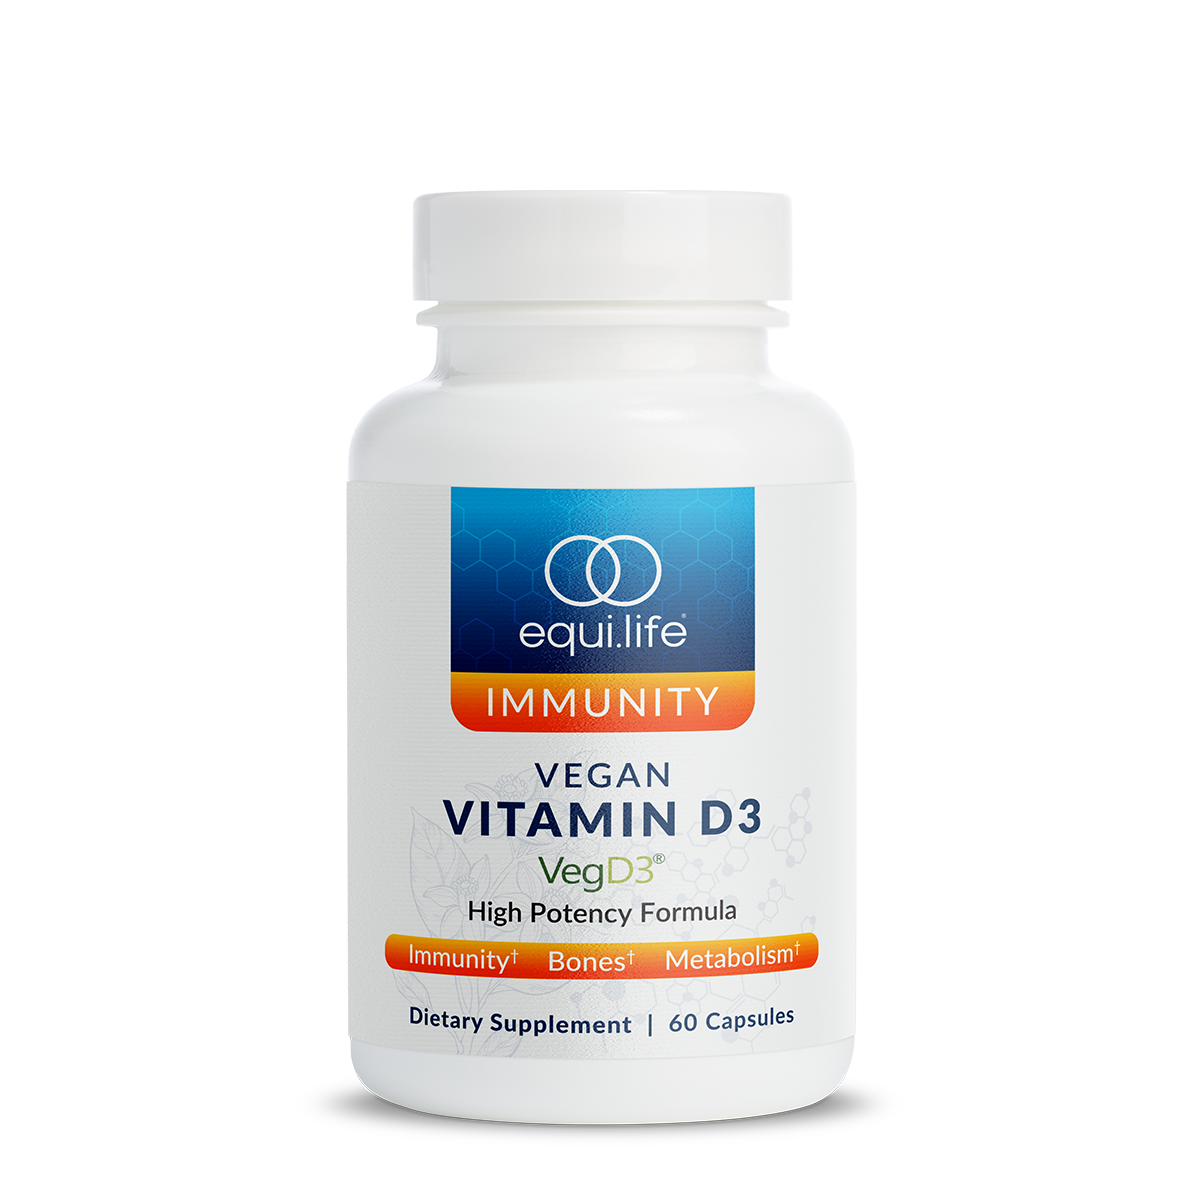 Vegan Vitamin D3 (Capsules)